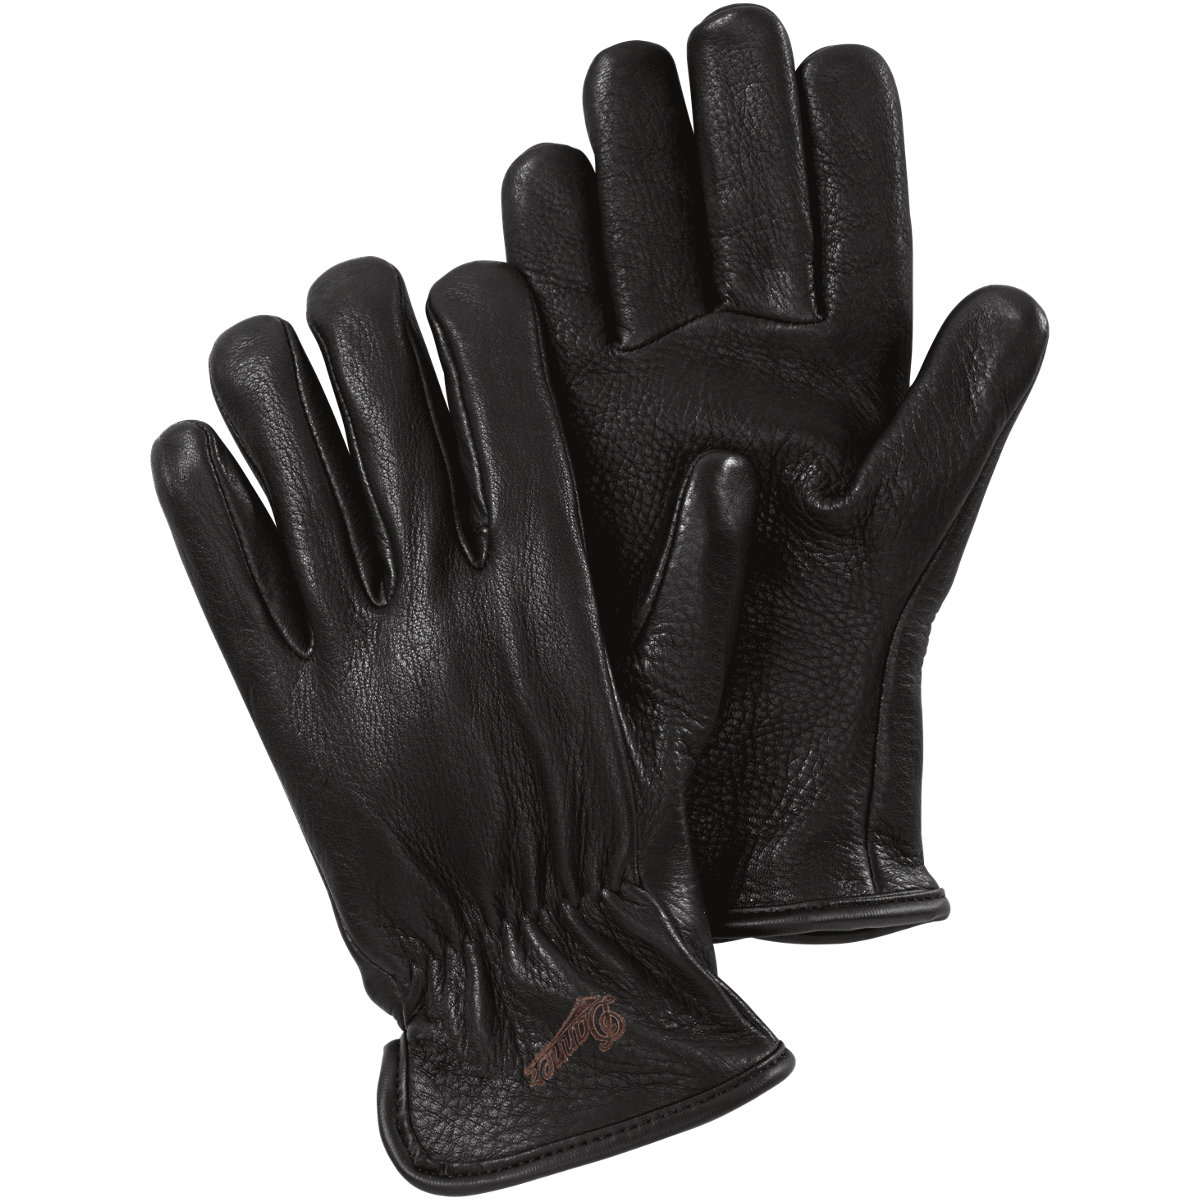 Glove - Deerskin - Merino Lined Black